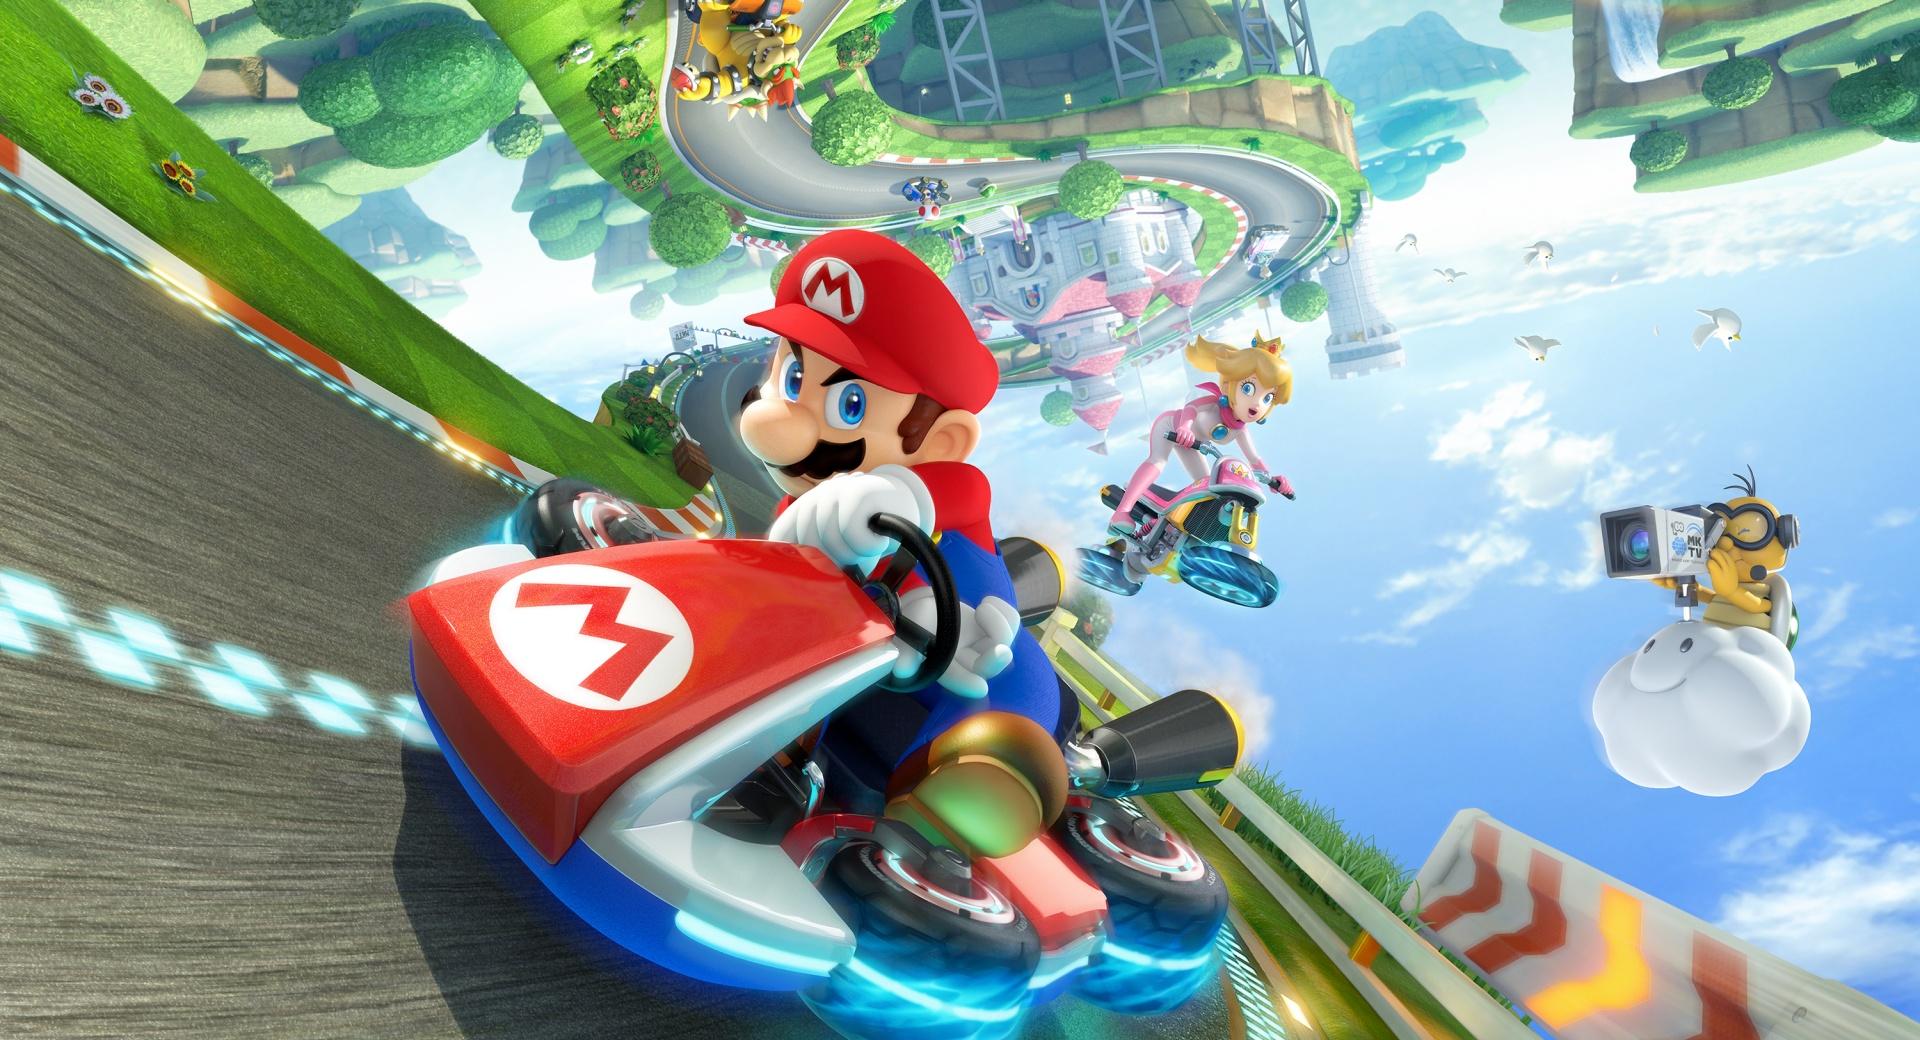 Mario Kart 8 Koopaling Characters at 2048 x 2048 iPad size wallpapers HD quality